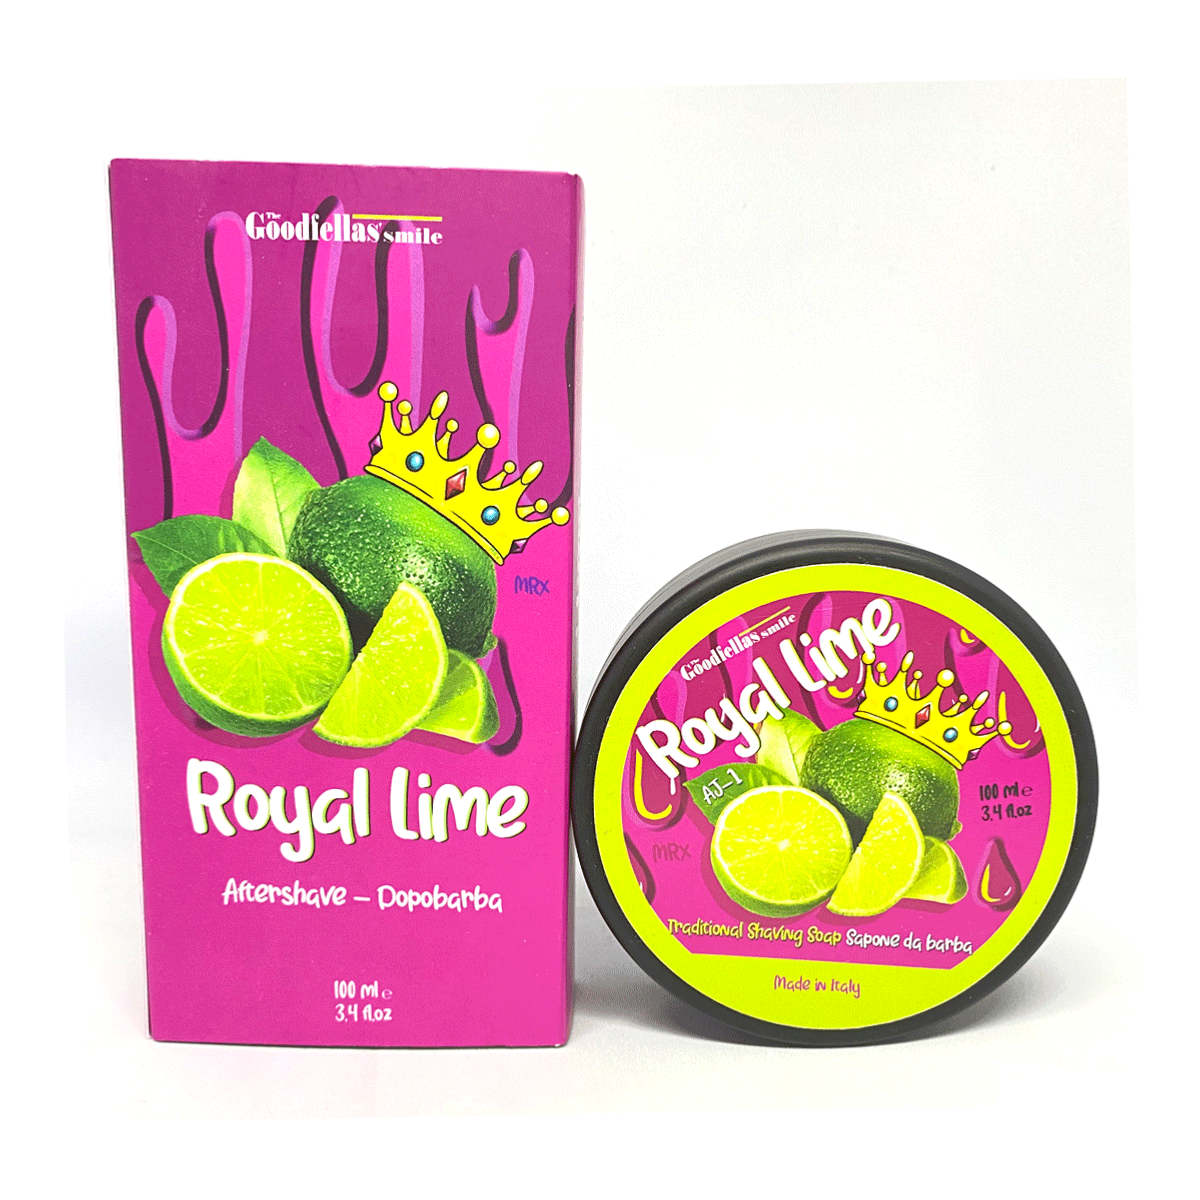 THE GOODFELLA'S SMILE - Set de rasage - Royal Lime